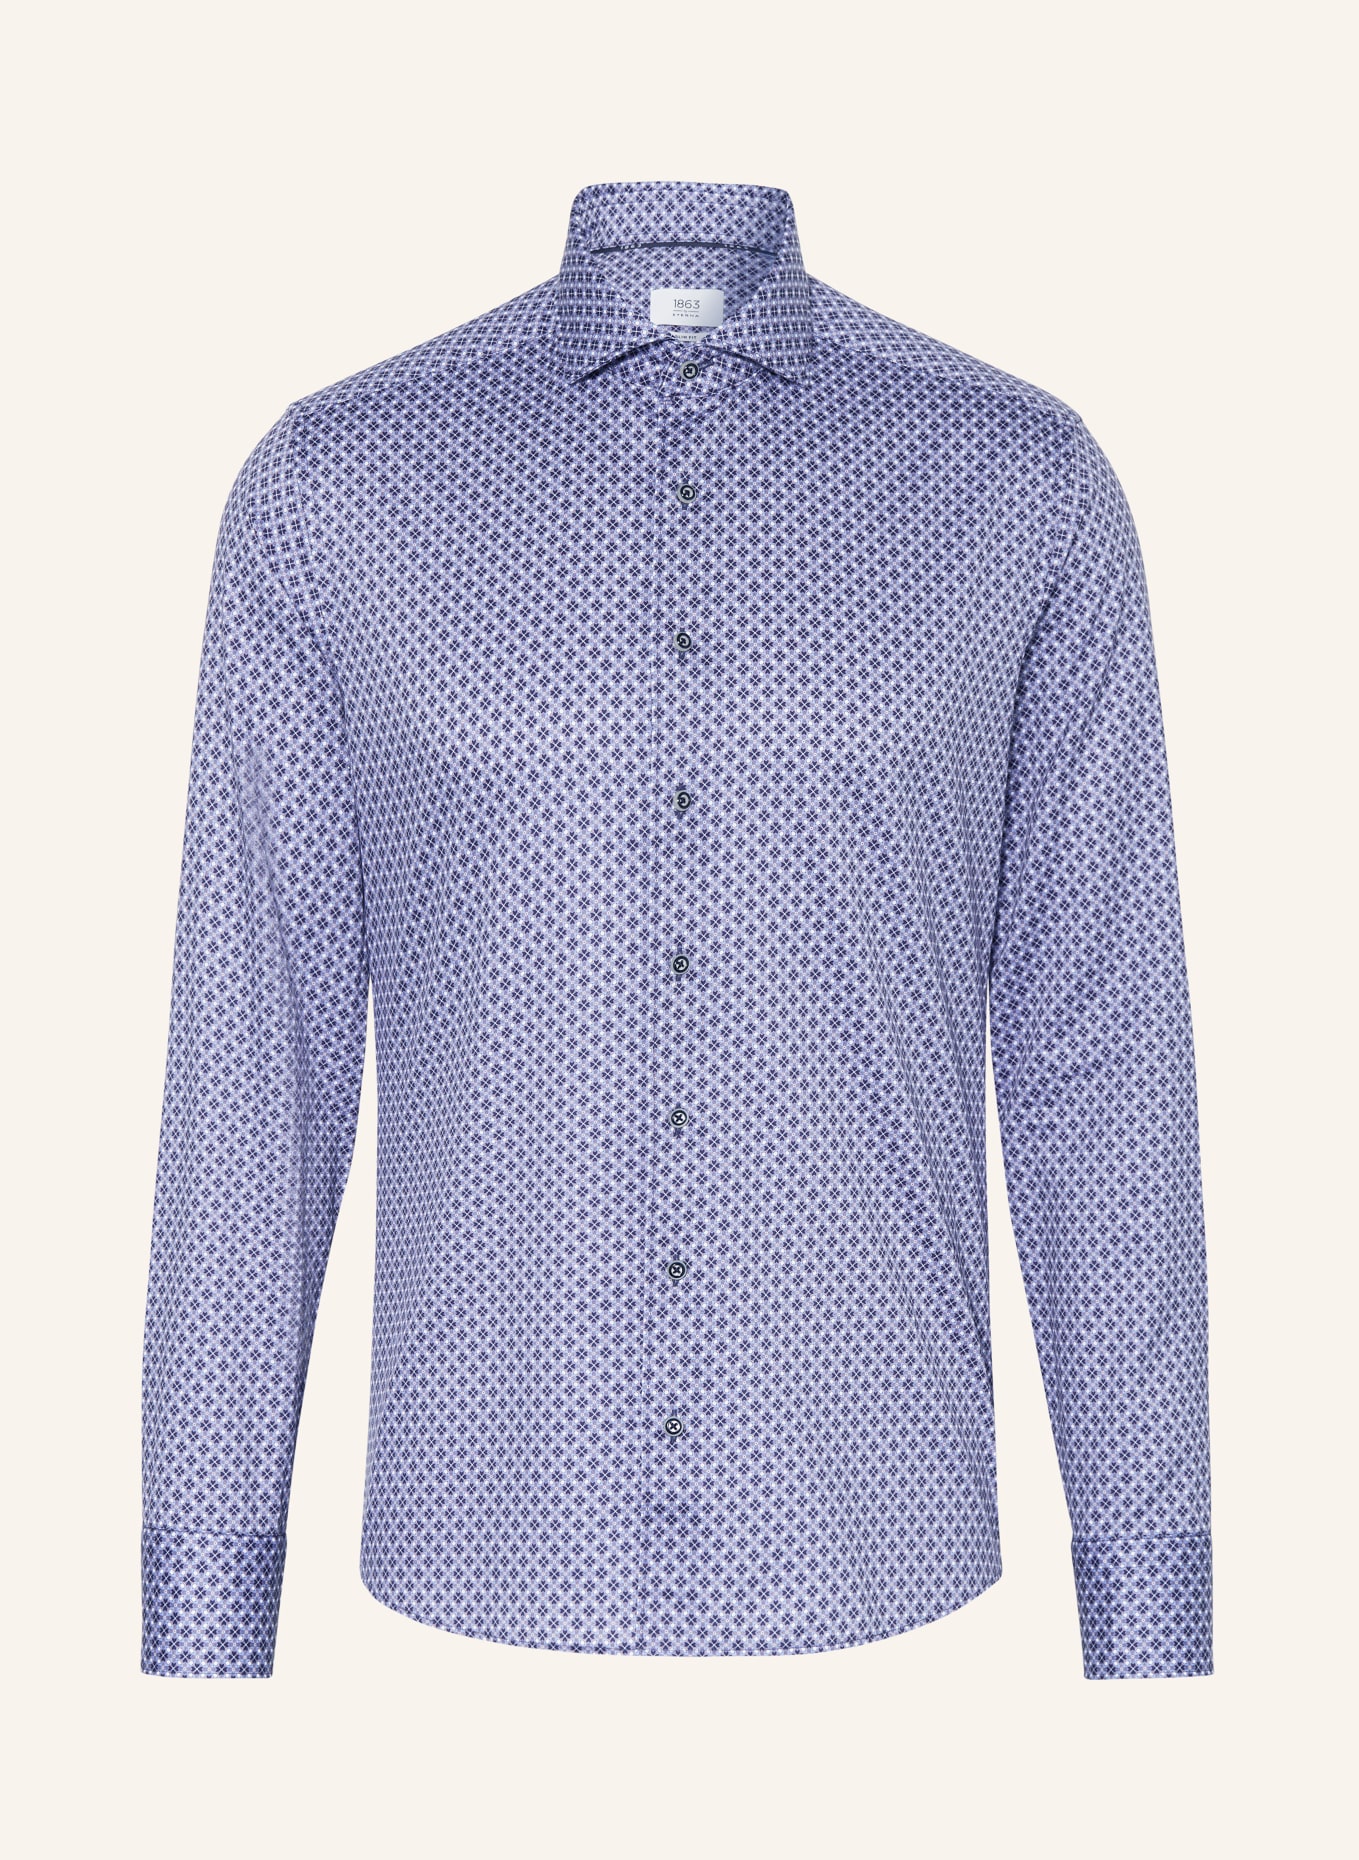 ETERNA 1863 Shirt slim fit, Color: DARK BLUE/ TAUPE/ LIGHT BLUE (Image 1)